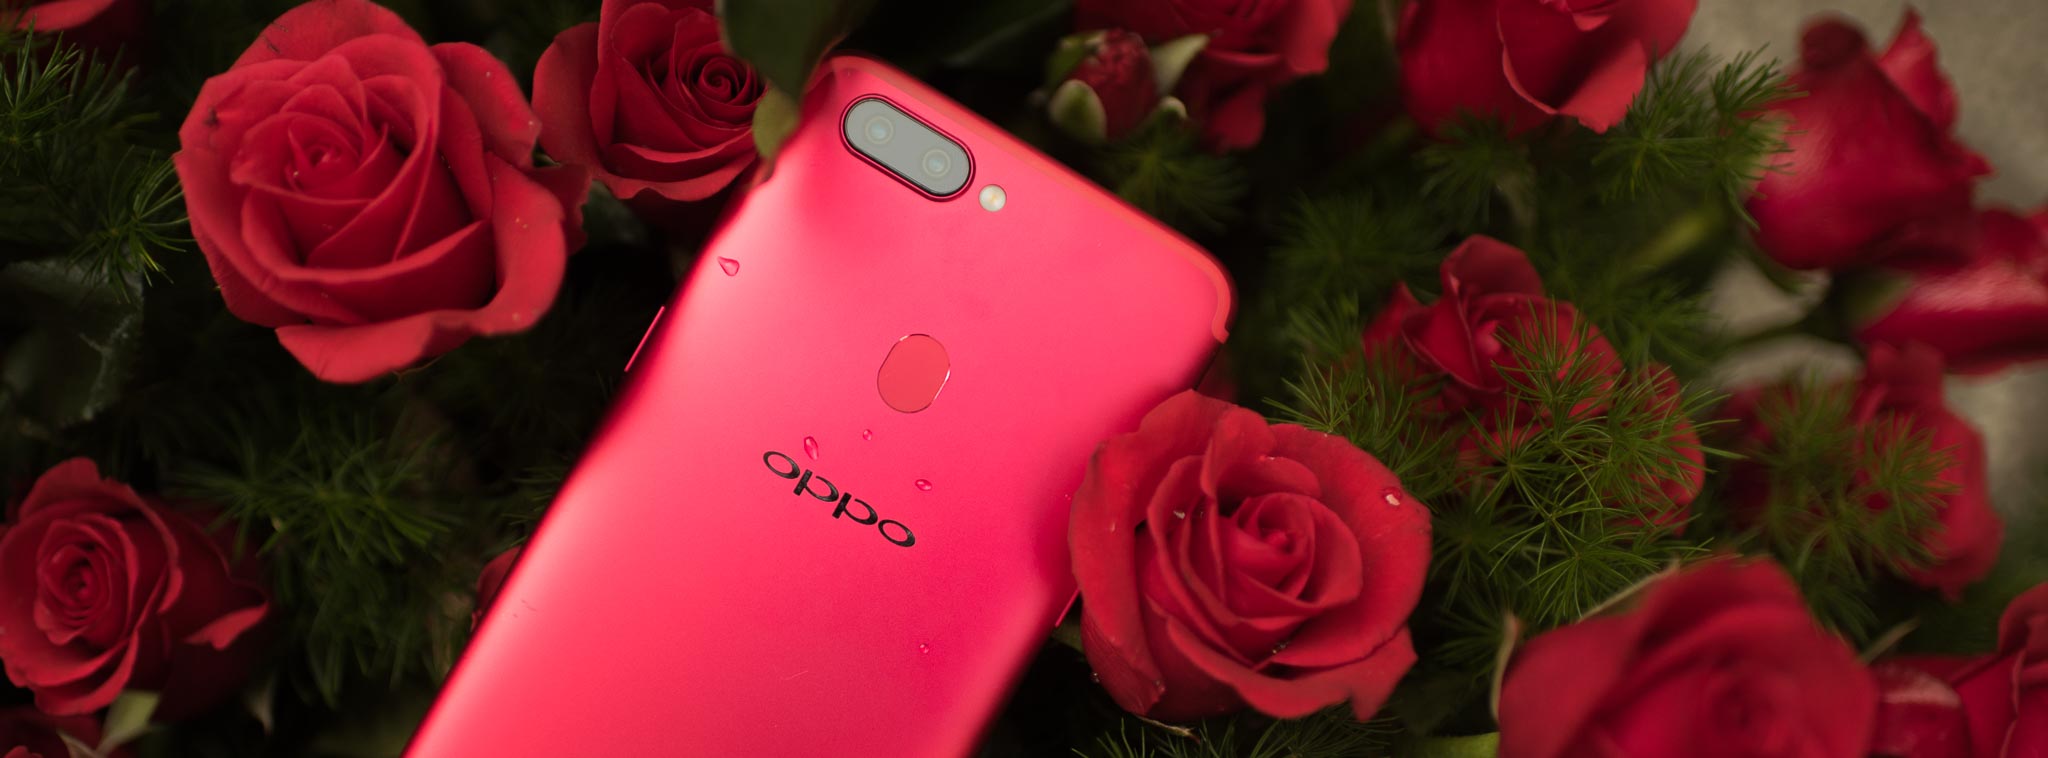 Trên tay OPPO R11s: chiếc điện thoại cao cấp nhất của OPPO, màn hình 18:9, Snapdragon 660